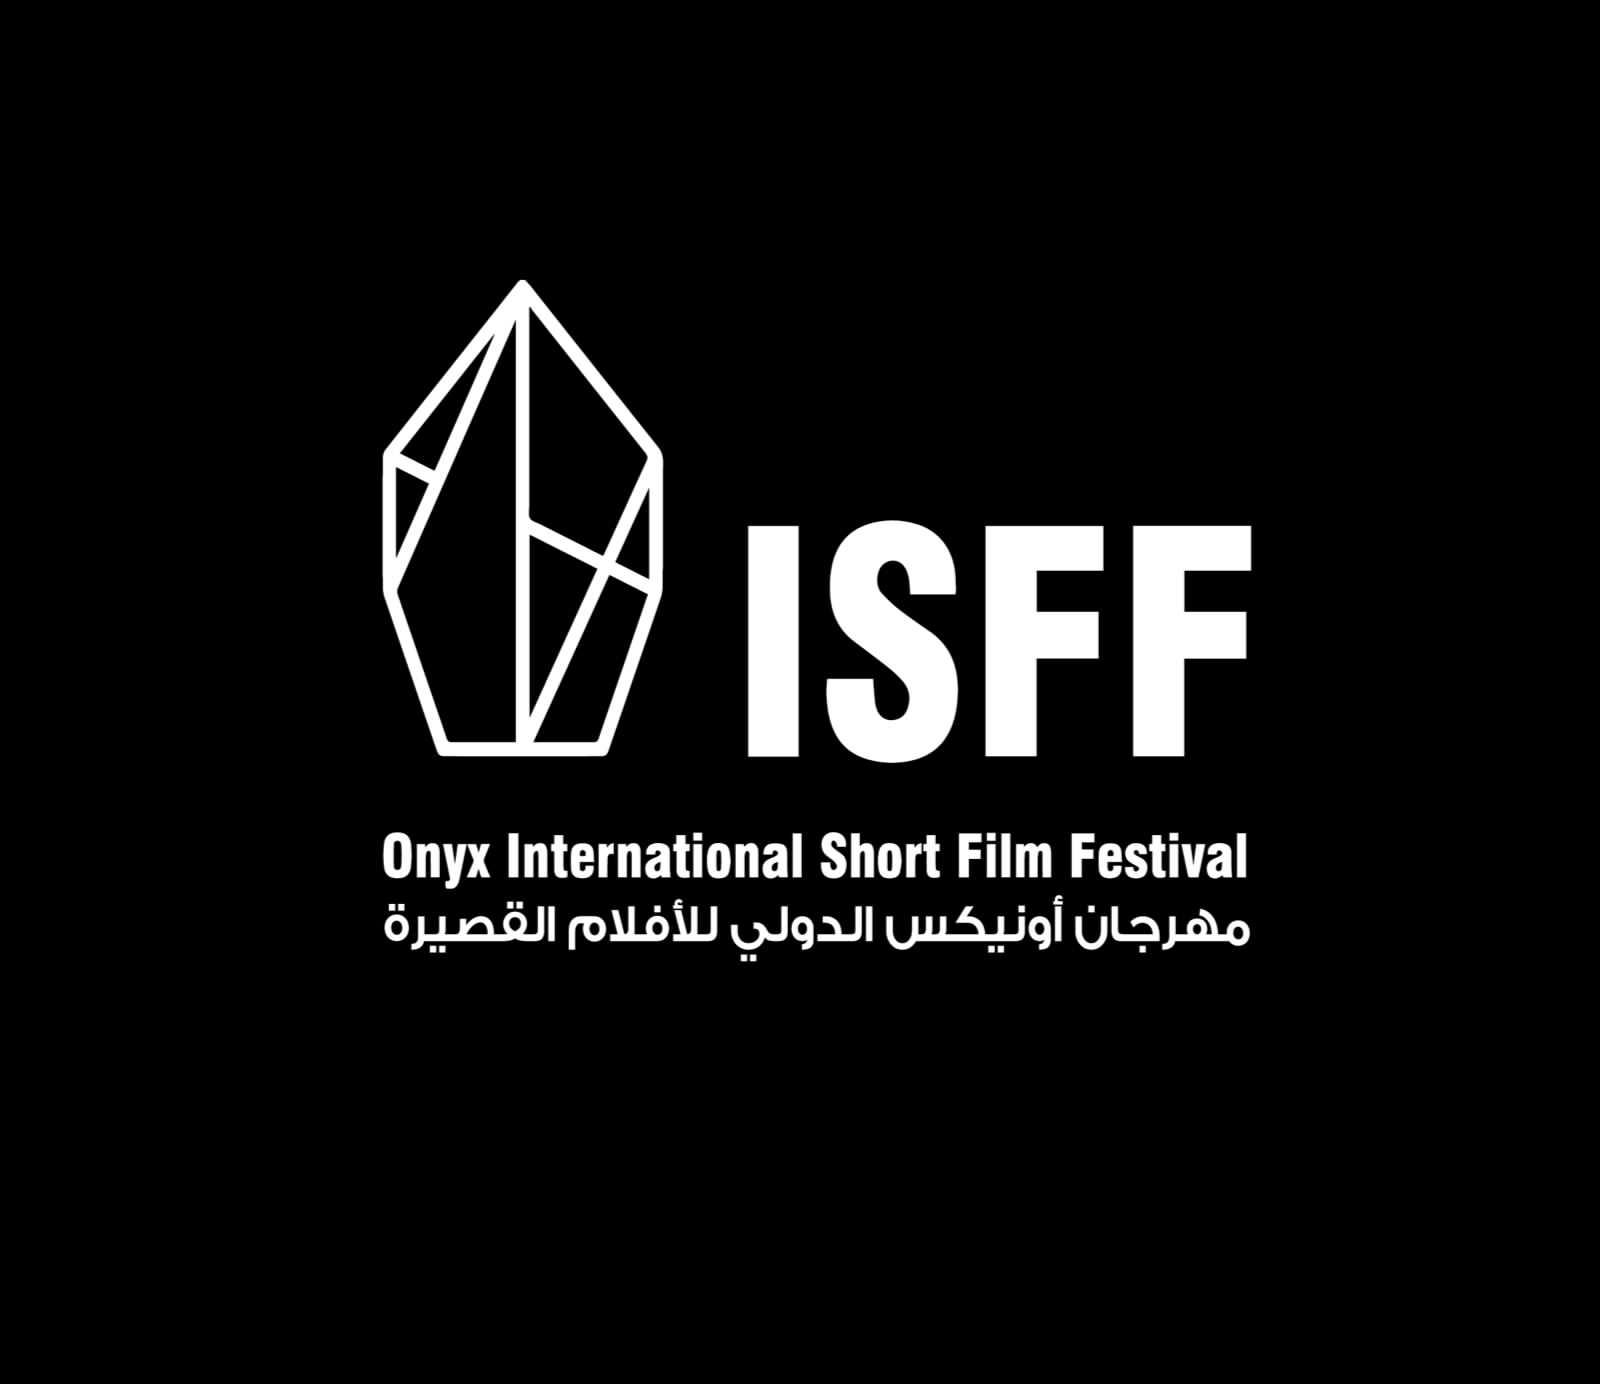 مهرجان اونيكس الدولي للأفلام القصيرة يعلن عن فتح باب التسجيل فى دورته الأولى